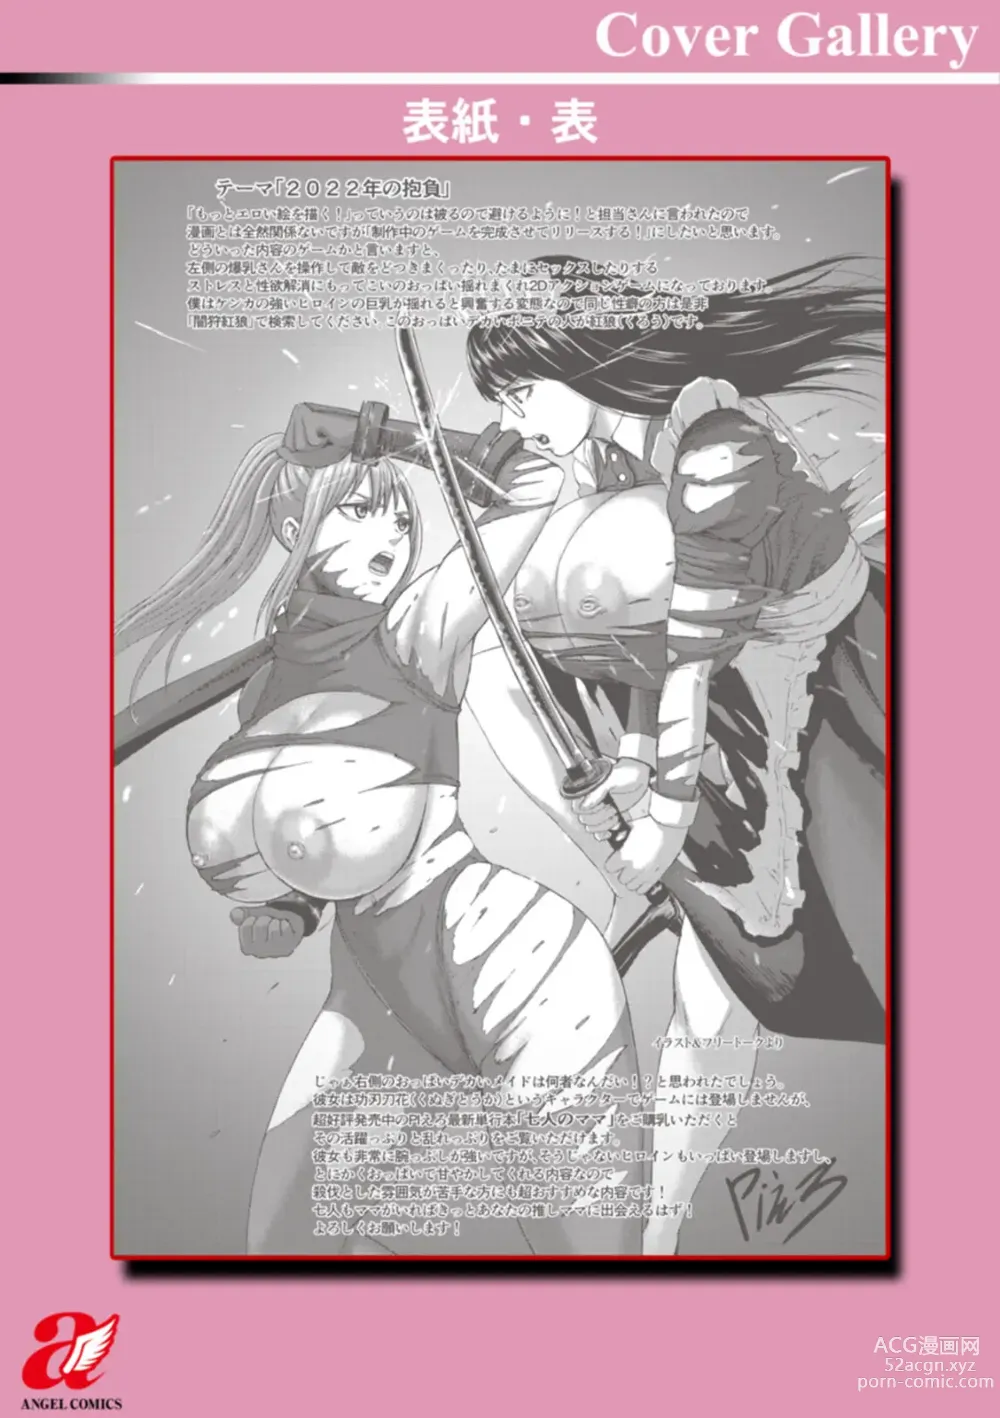 Page 226 of manga AV Kazoku